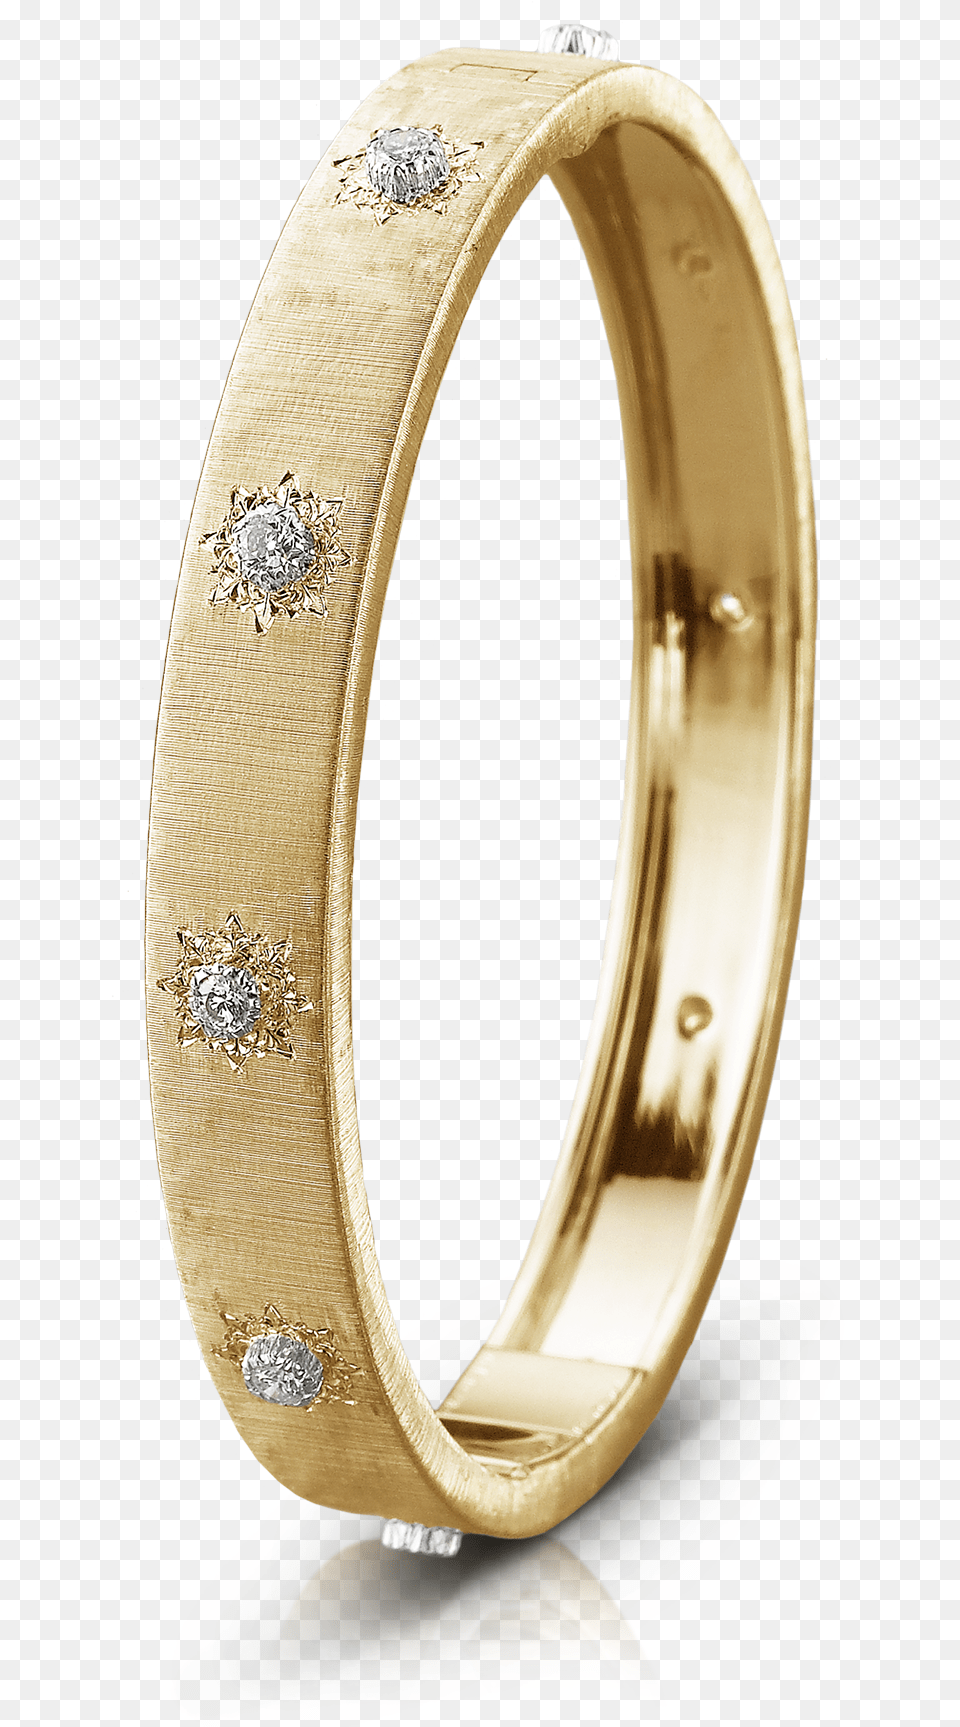 Macri Classica Bangle Bracelet Buccellati Macri, Accessories, Jewelry, Ornament, Gold Free Png Download